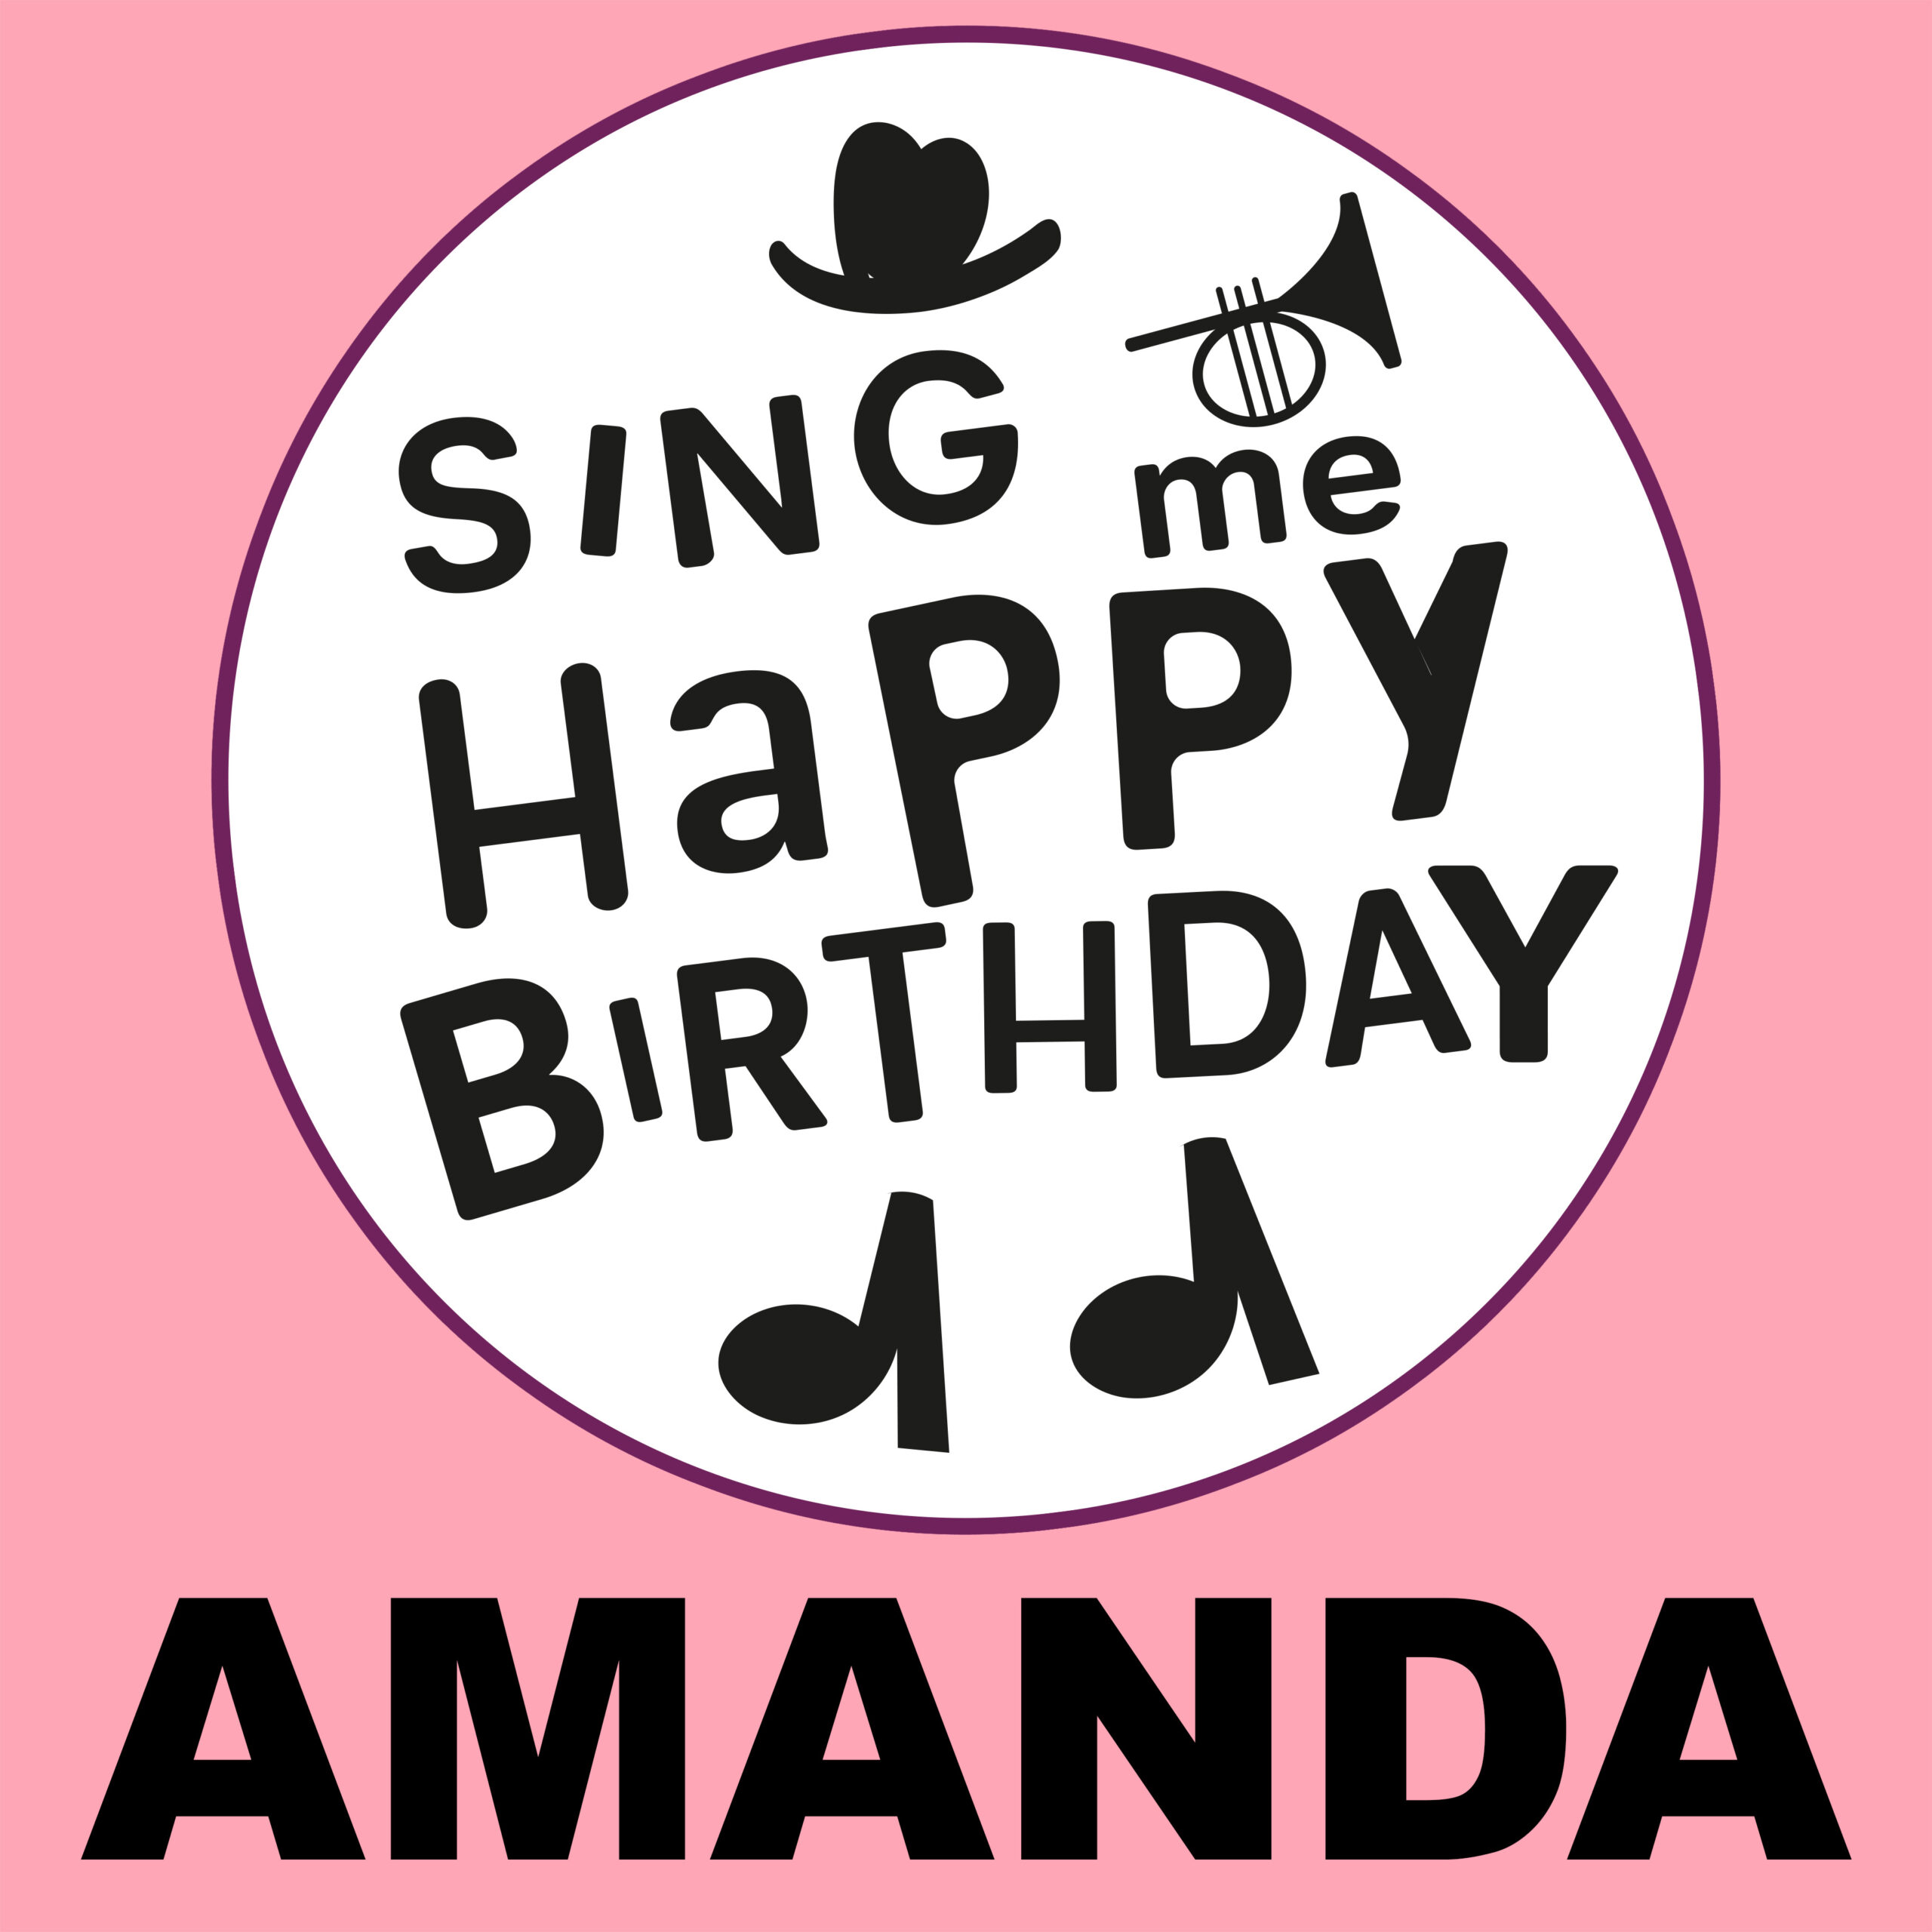 Happy Birthday Amanda ⋆ Birthday Songs ⋆ Sing Me Happy Birthday